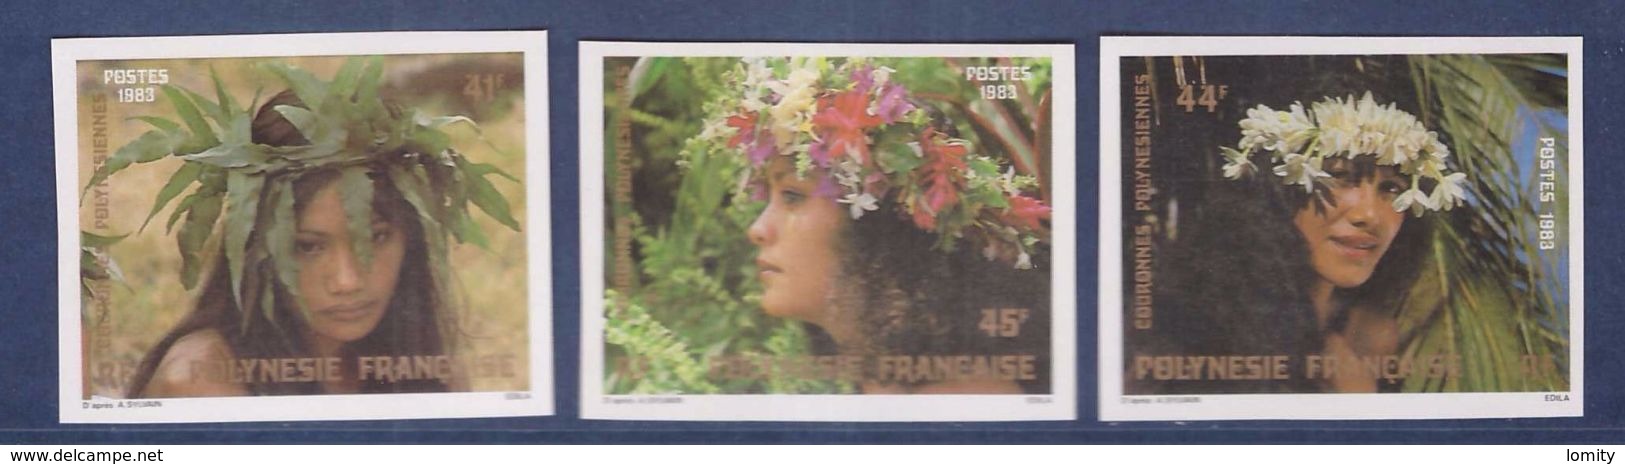 Polynesie Française Timbre Non Dentelé Neuf Luxe ** Série Complète N° 205 à 207 Cote 30€ - Imperforates, Proofs & Errors